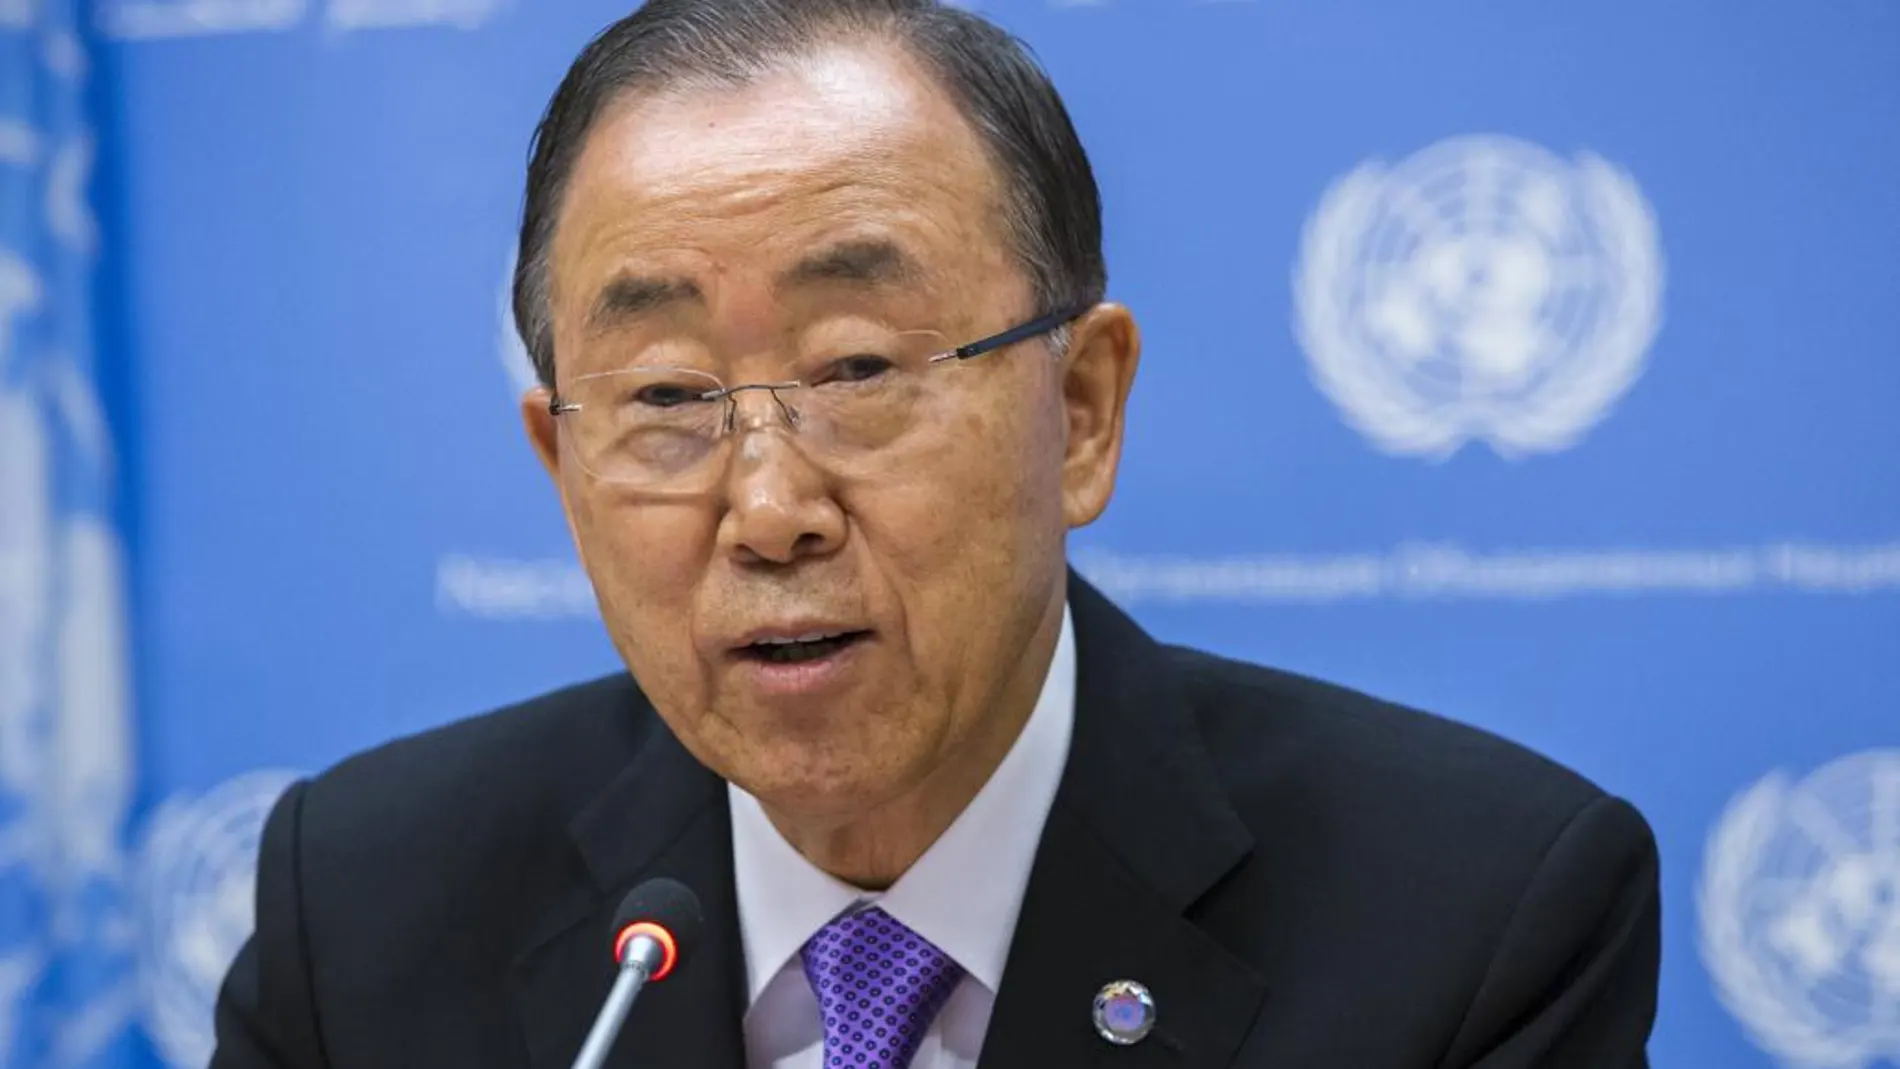 El Secretario General de la ONU Ban Ki-moon, durante su intervención